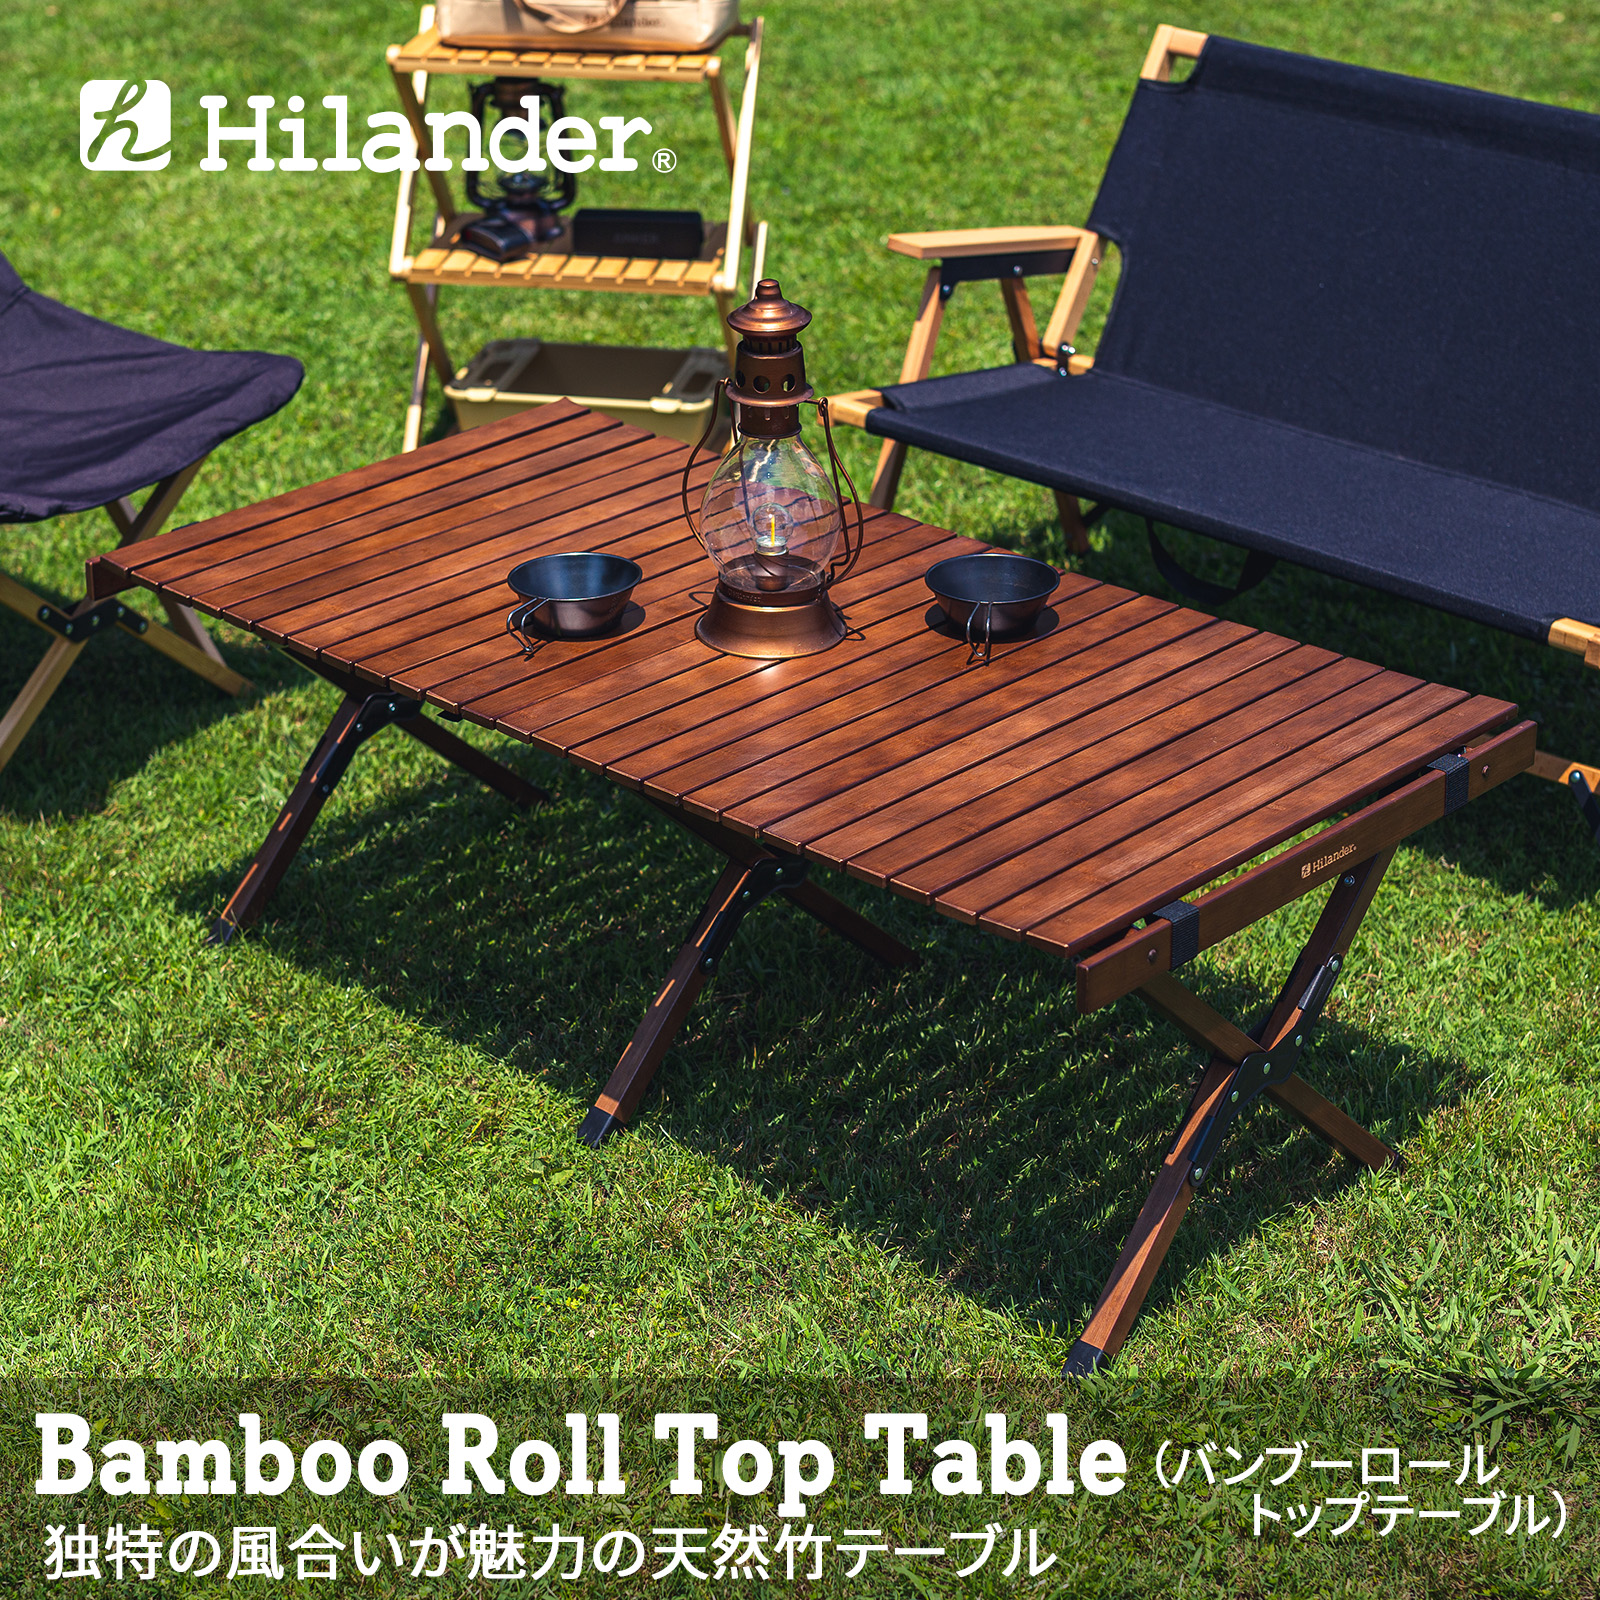 【楽天市場】Hilander(ハイランダー) バンブーロールトップテーブル